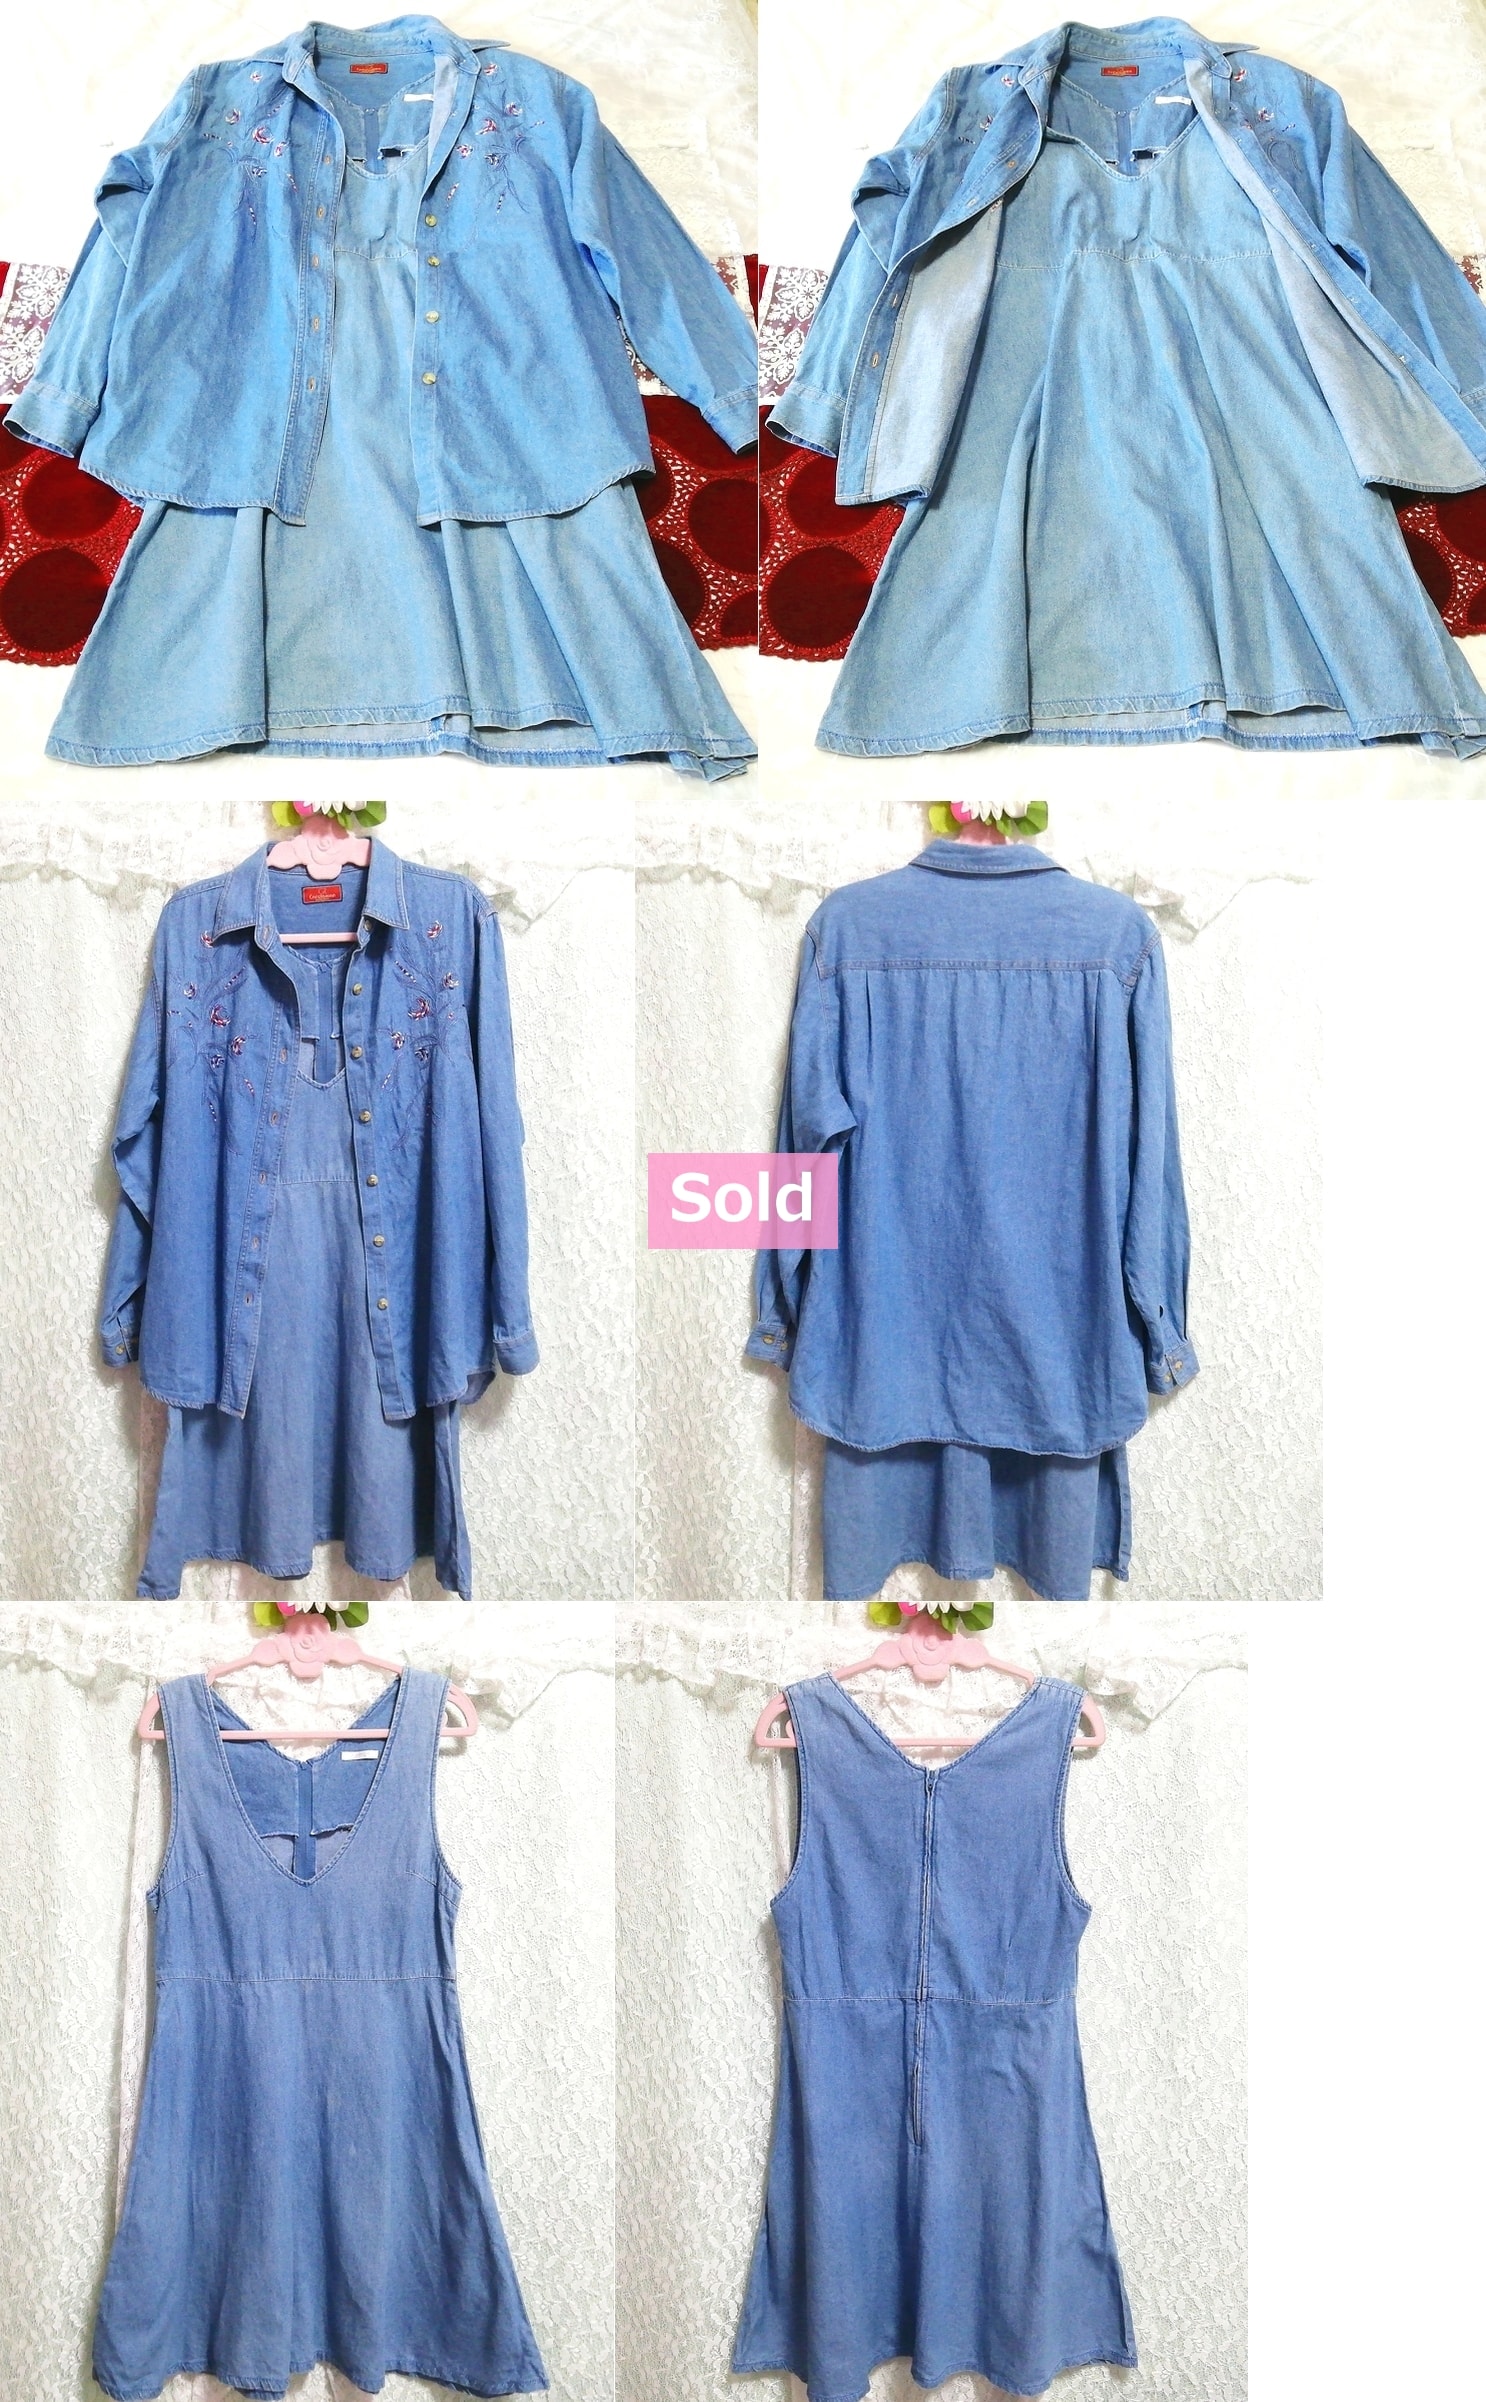 Hellblaues Denim-Negligé-Nachthemd-Cardigan-Kleid aus Baumwolle mit Stickerei, 2 Stück, Mode, Frauenmode, Nachtwäsche, Pyjama